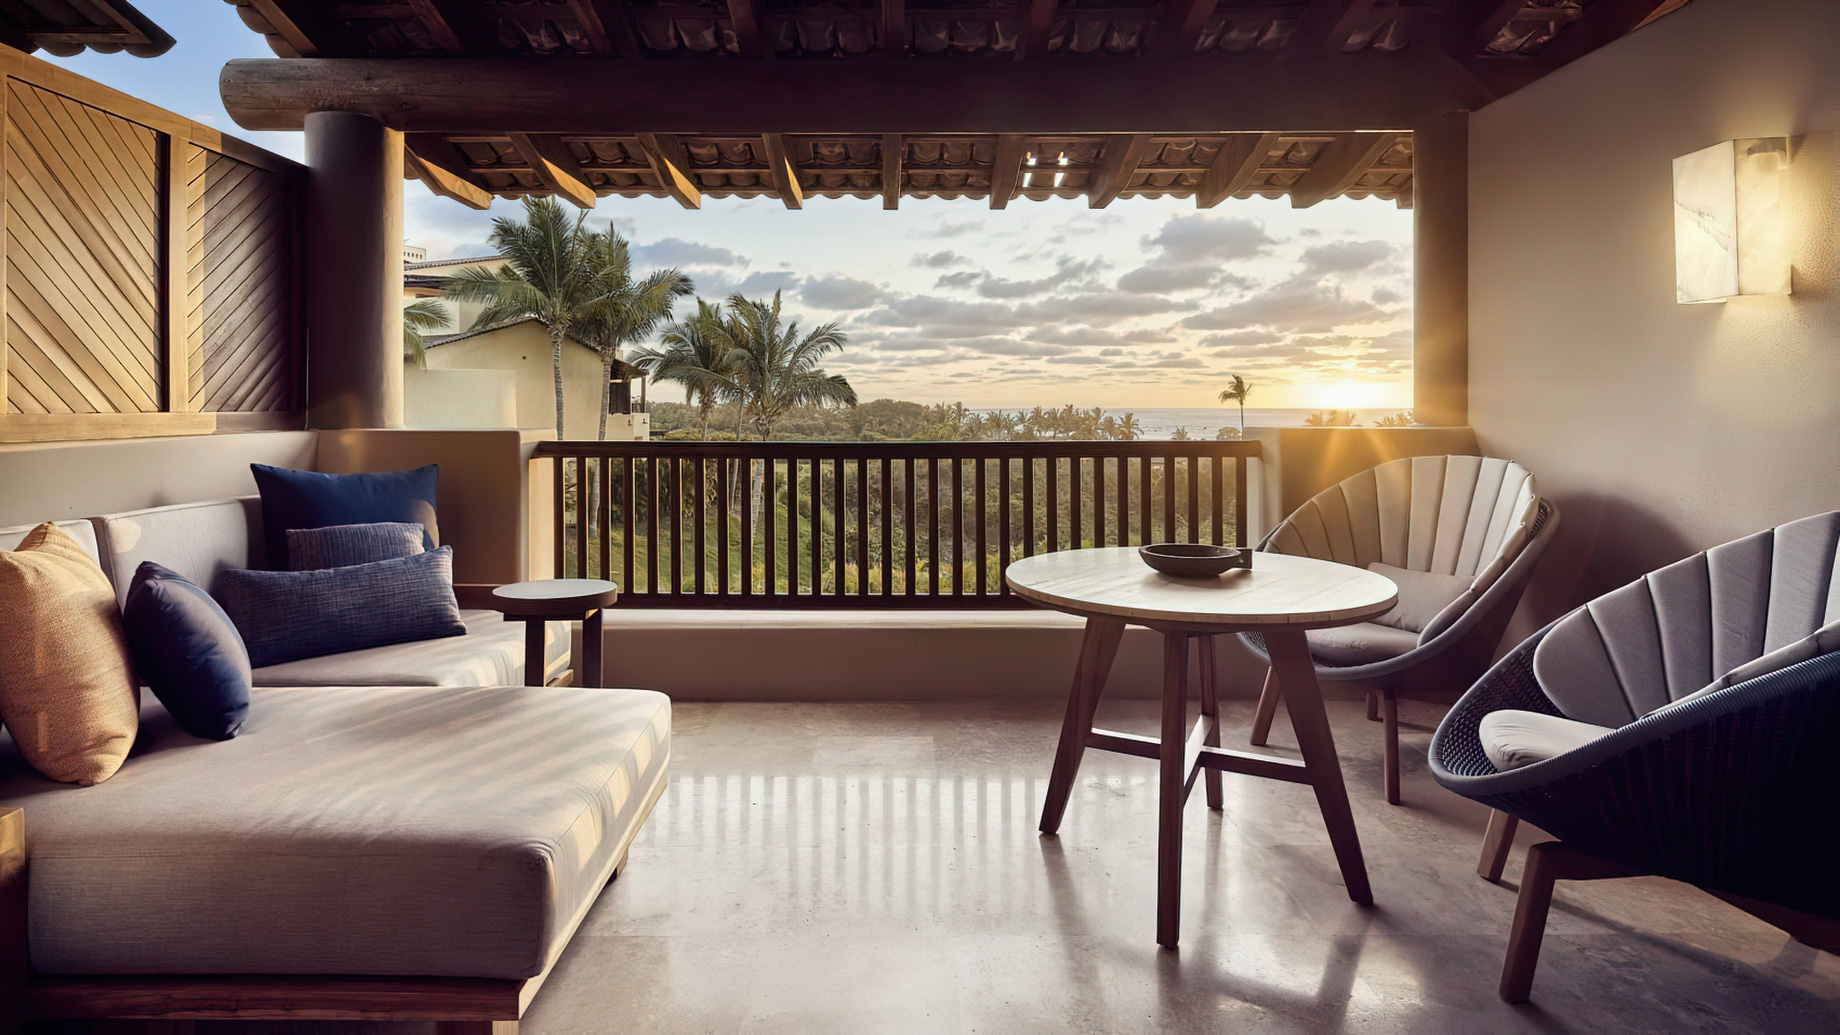 Four Seasons Resort Punta Mita – Nayarit, Mexico – Garden Casita Balcony